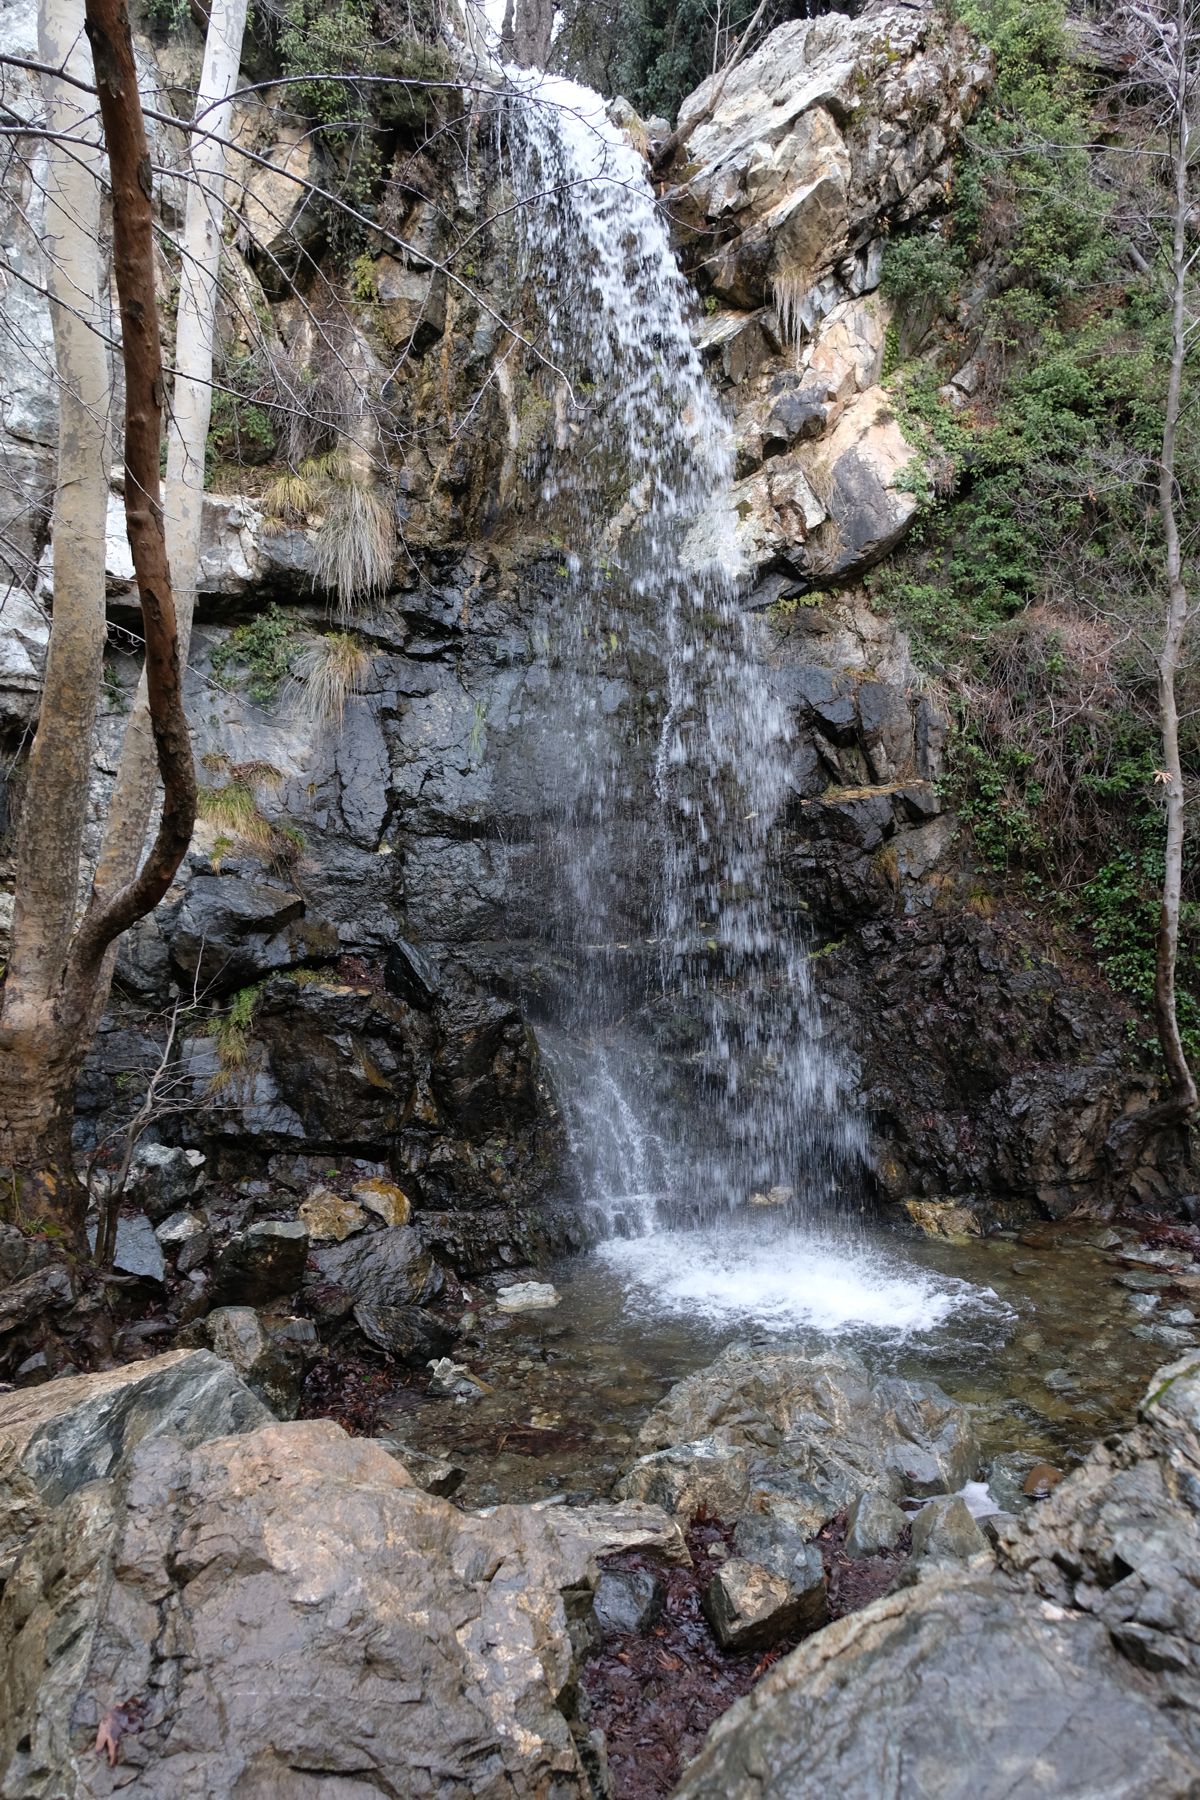 Part of Caledonia waterfall